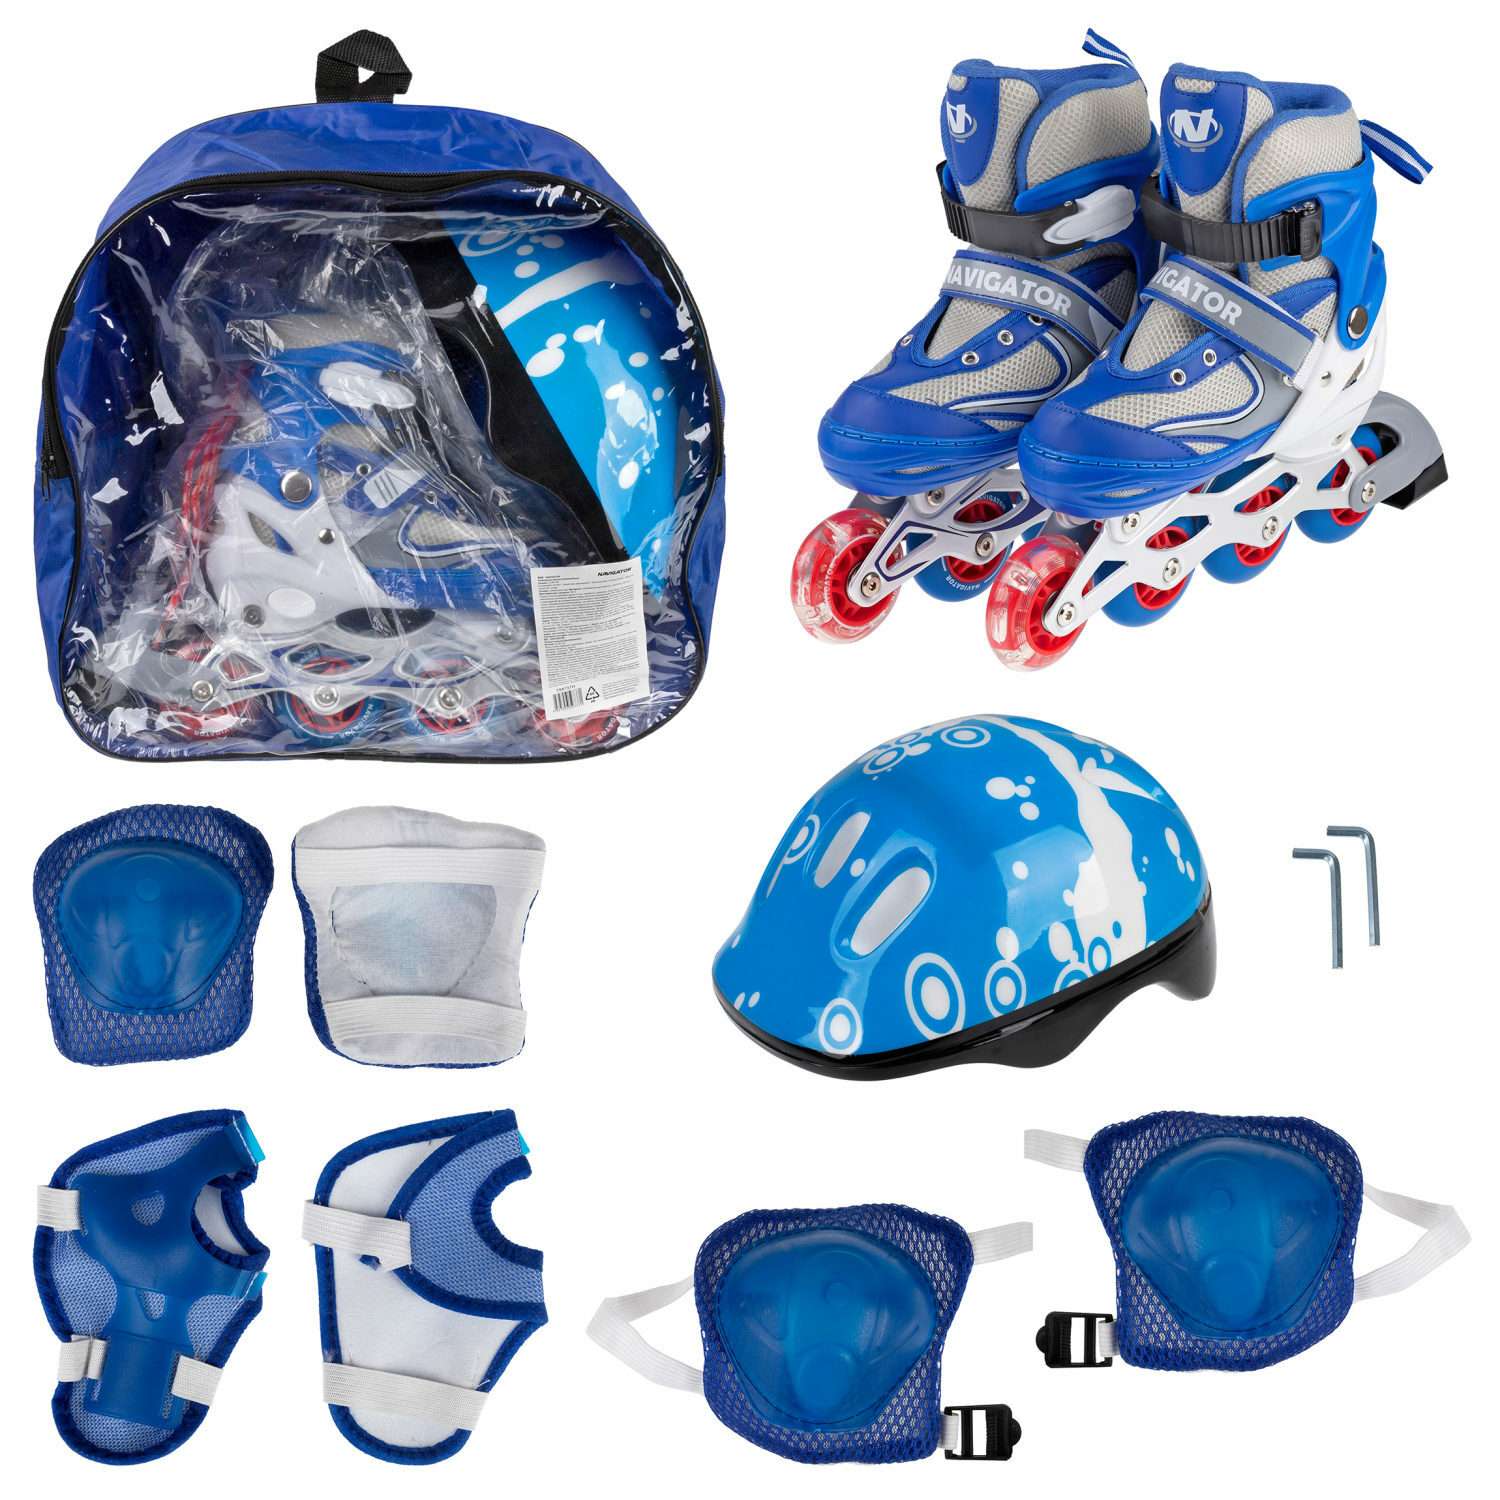 Ролики Navigator детские раздвижные 30 - 33 размер с защитой и шлемом синий - фото 2